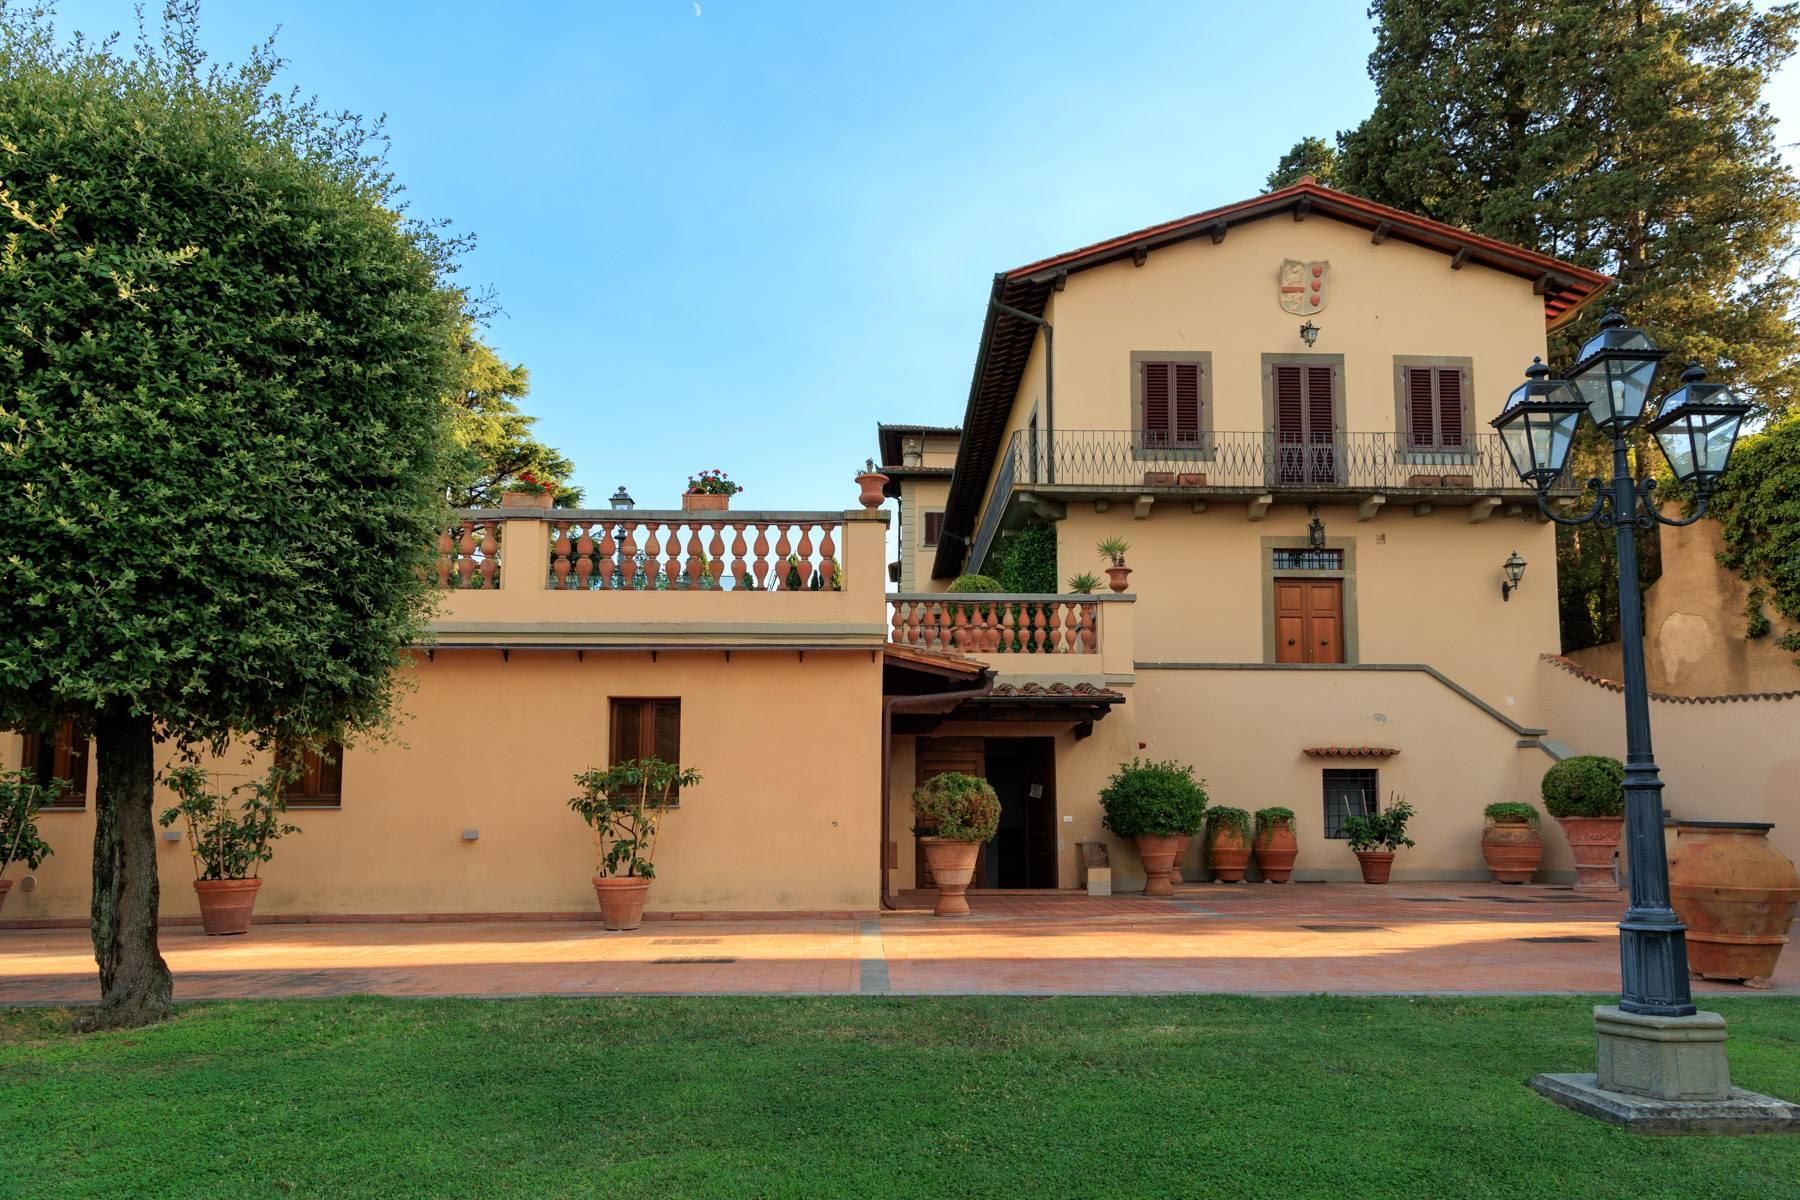 Appartement dans une villa historique sur les collines de Carmignano - 20